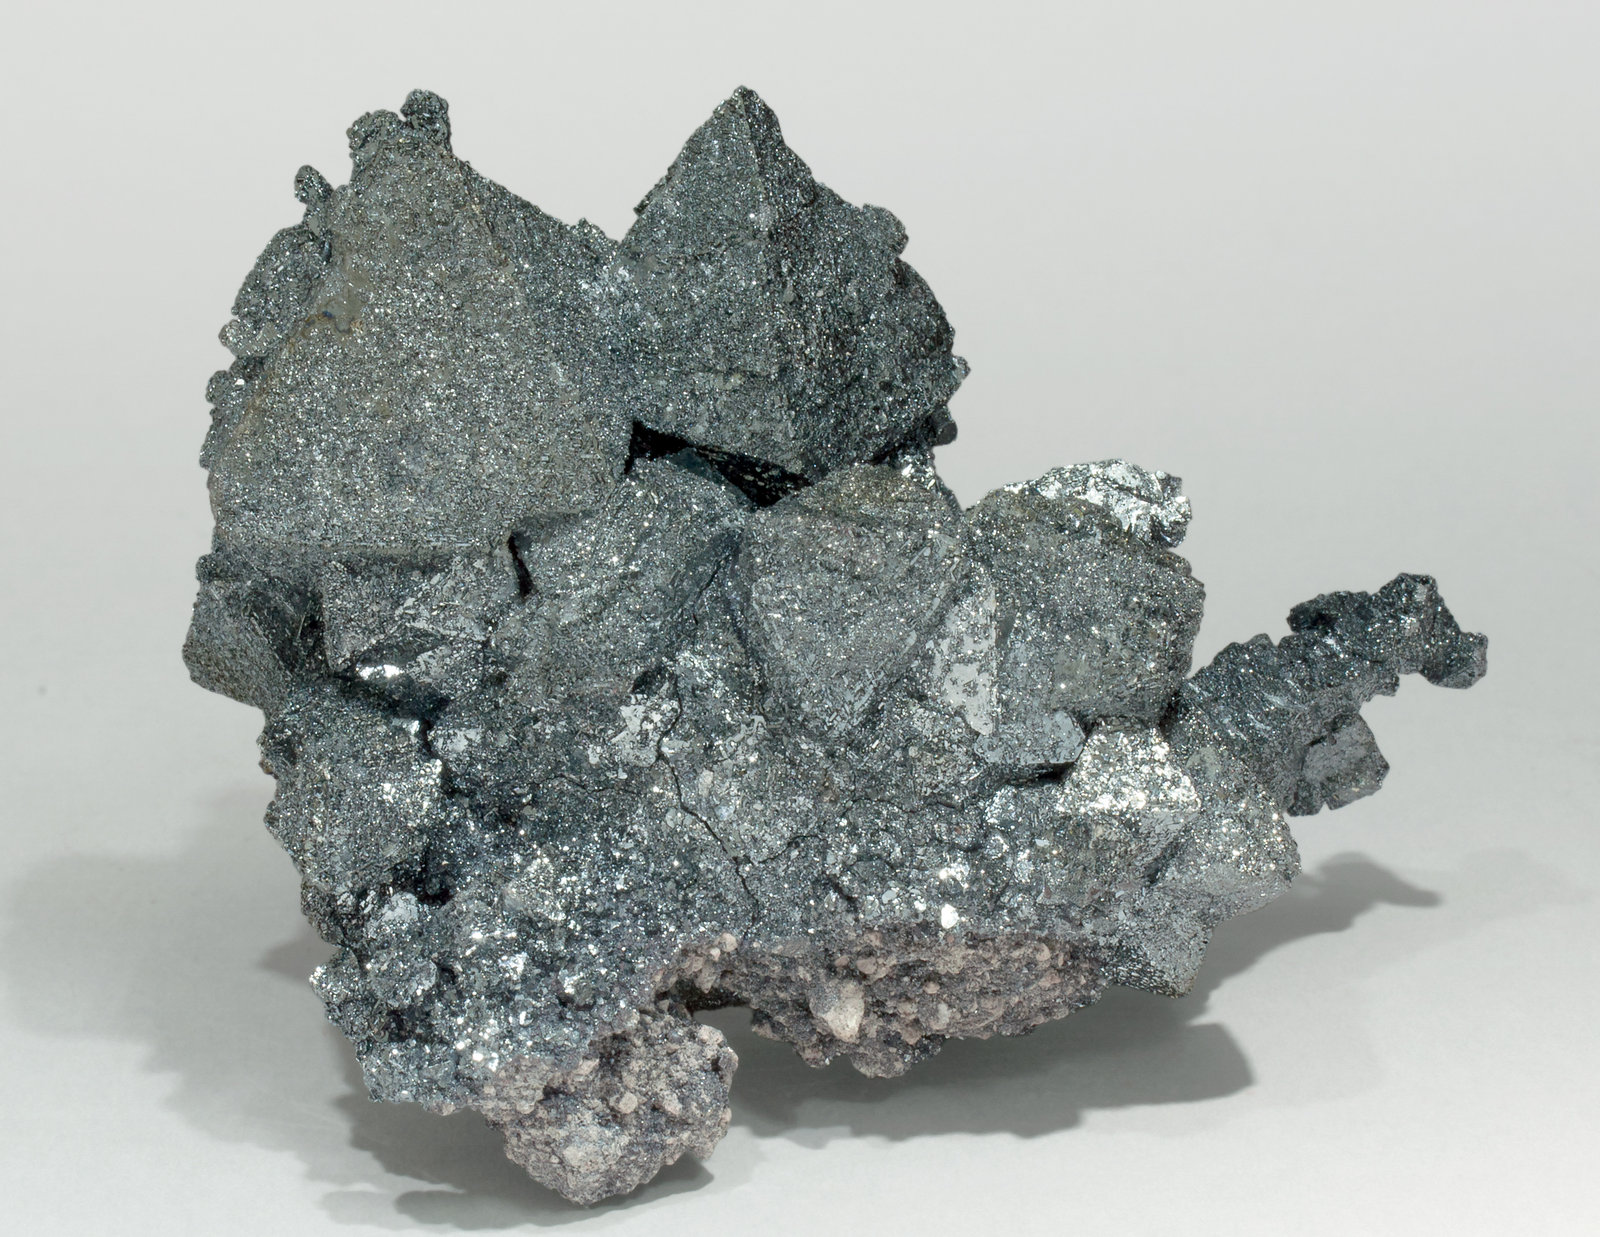 specimens/s_imagesZ1/Hematite-EY56Z1f.jpg